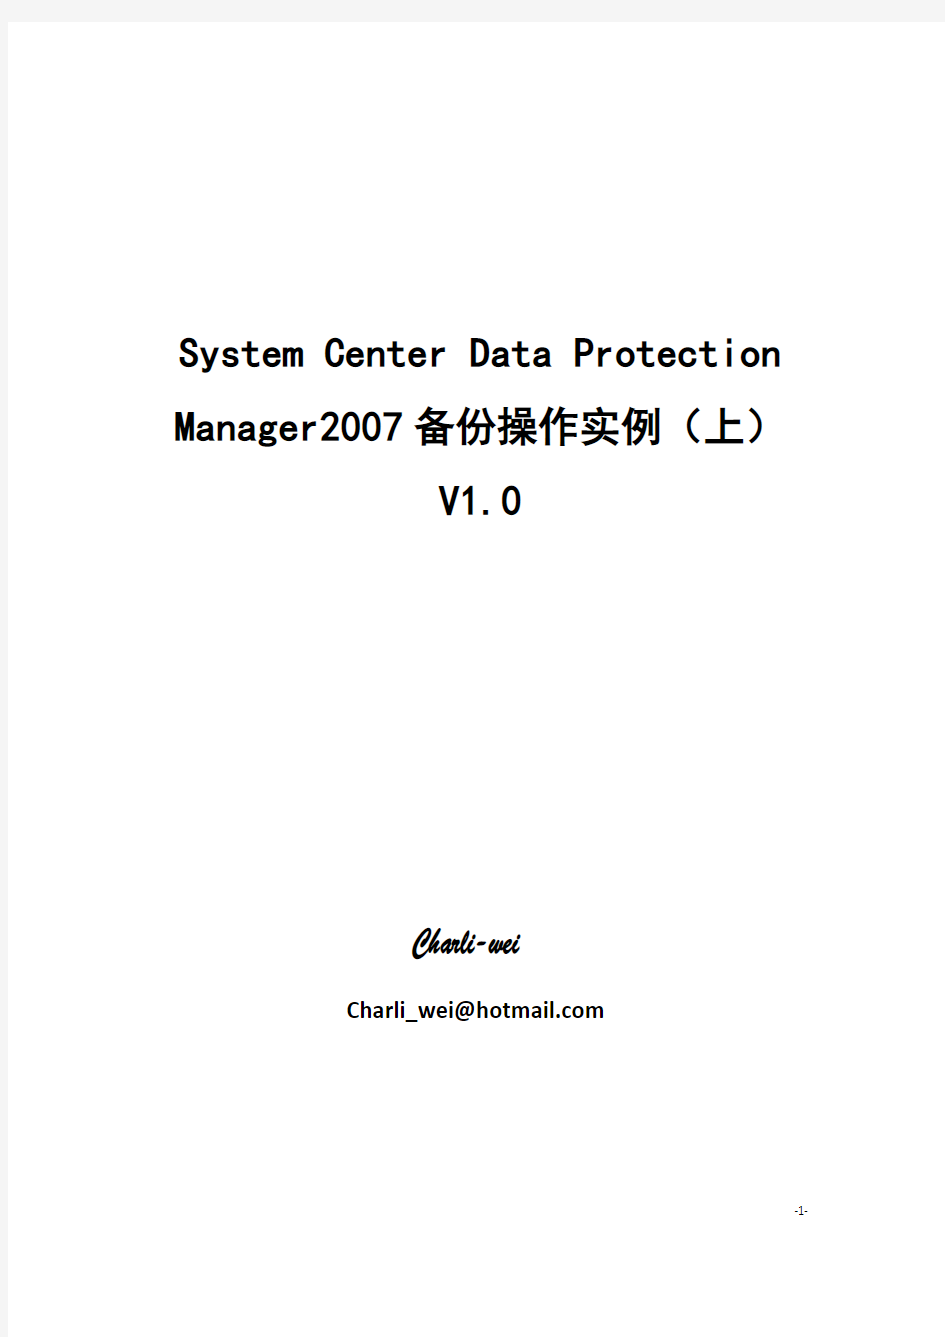 System Center Data Protection Manager2007备份操作实例(上) V1.0